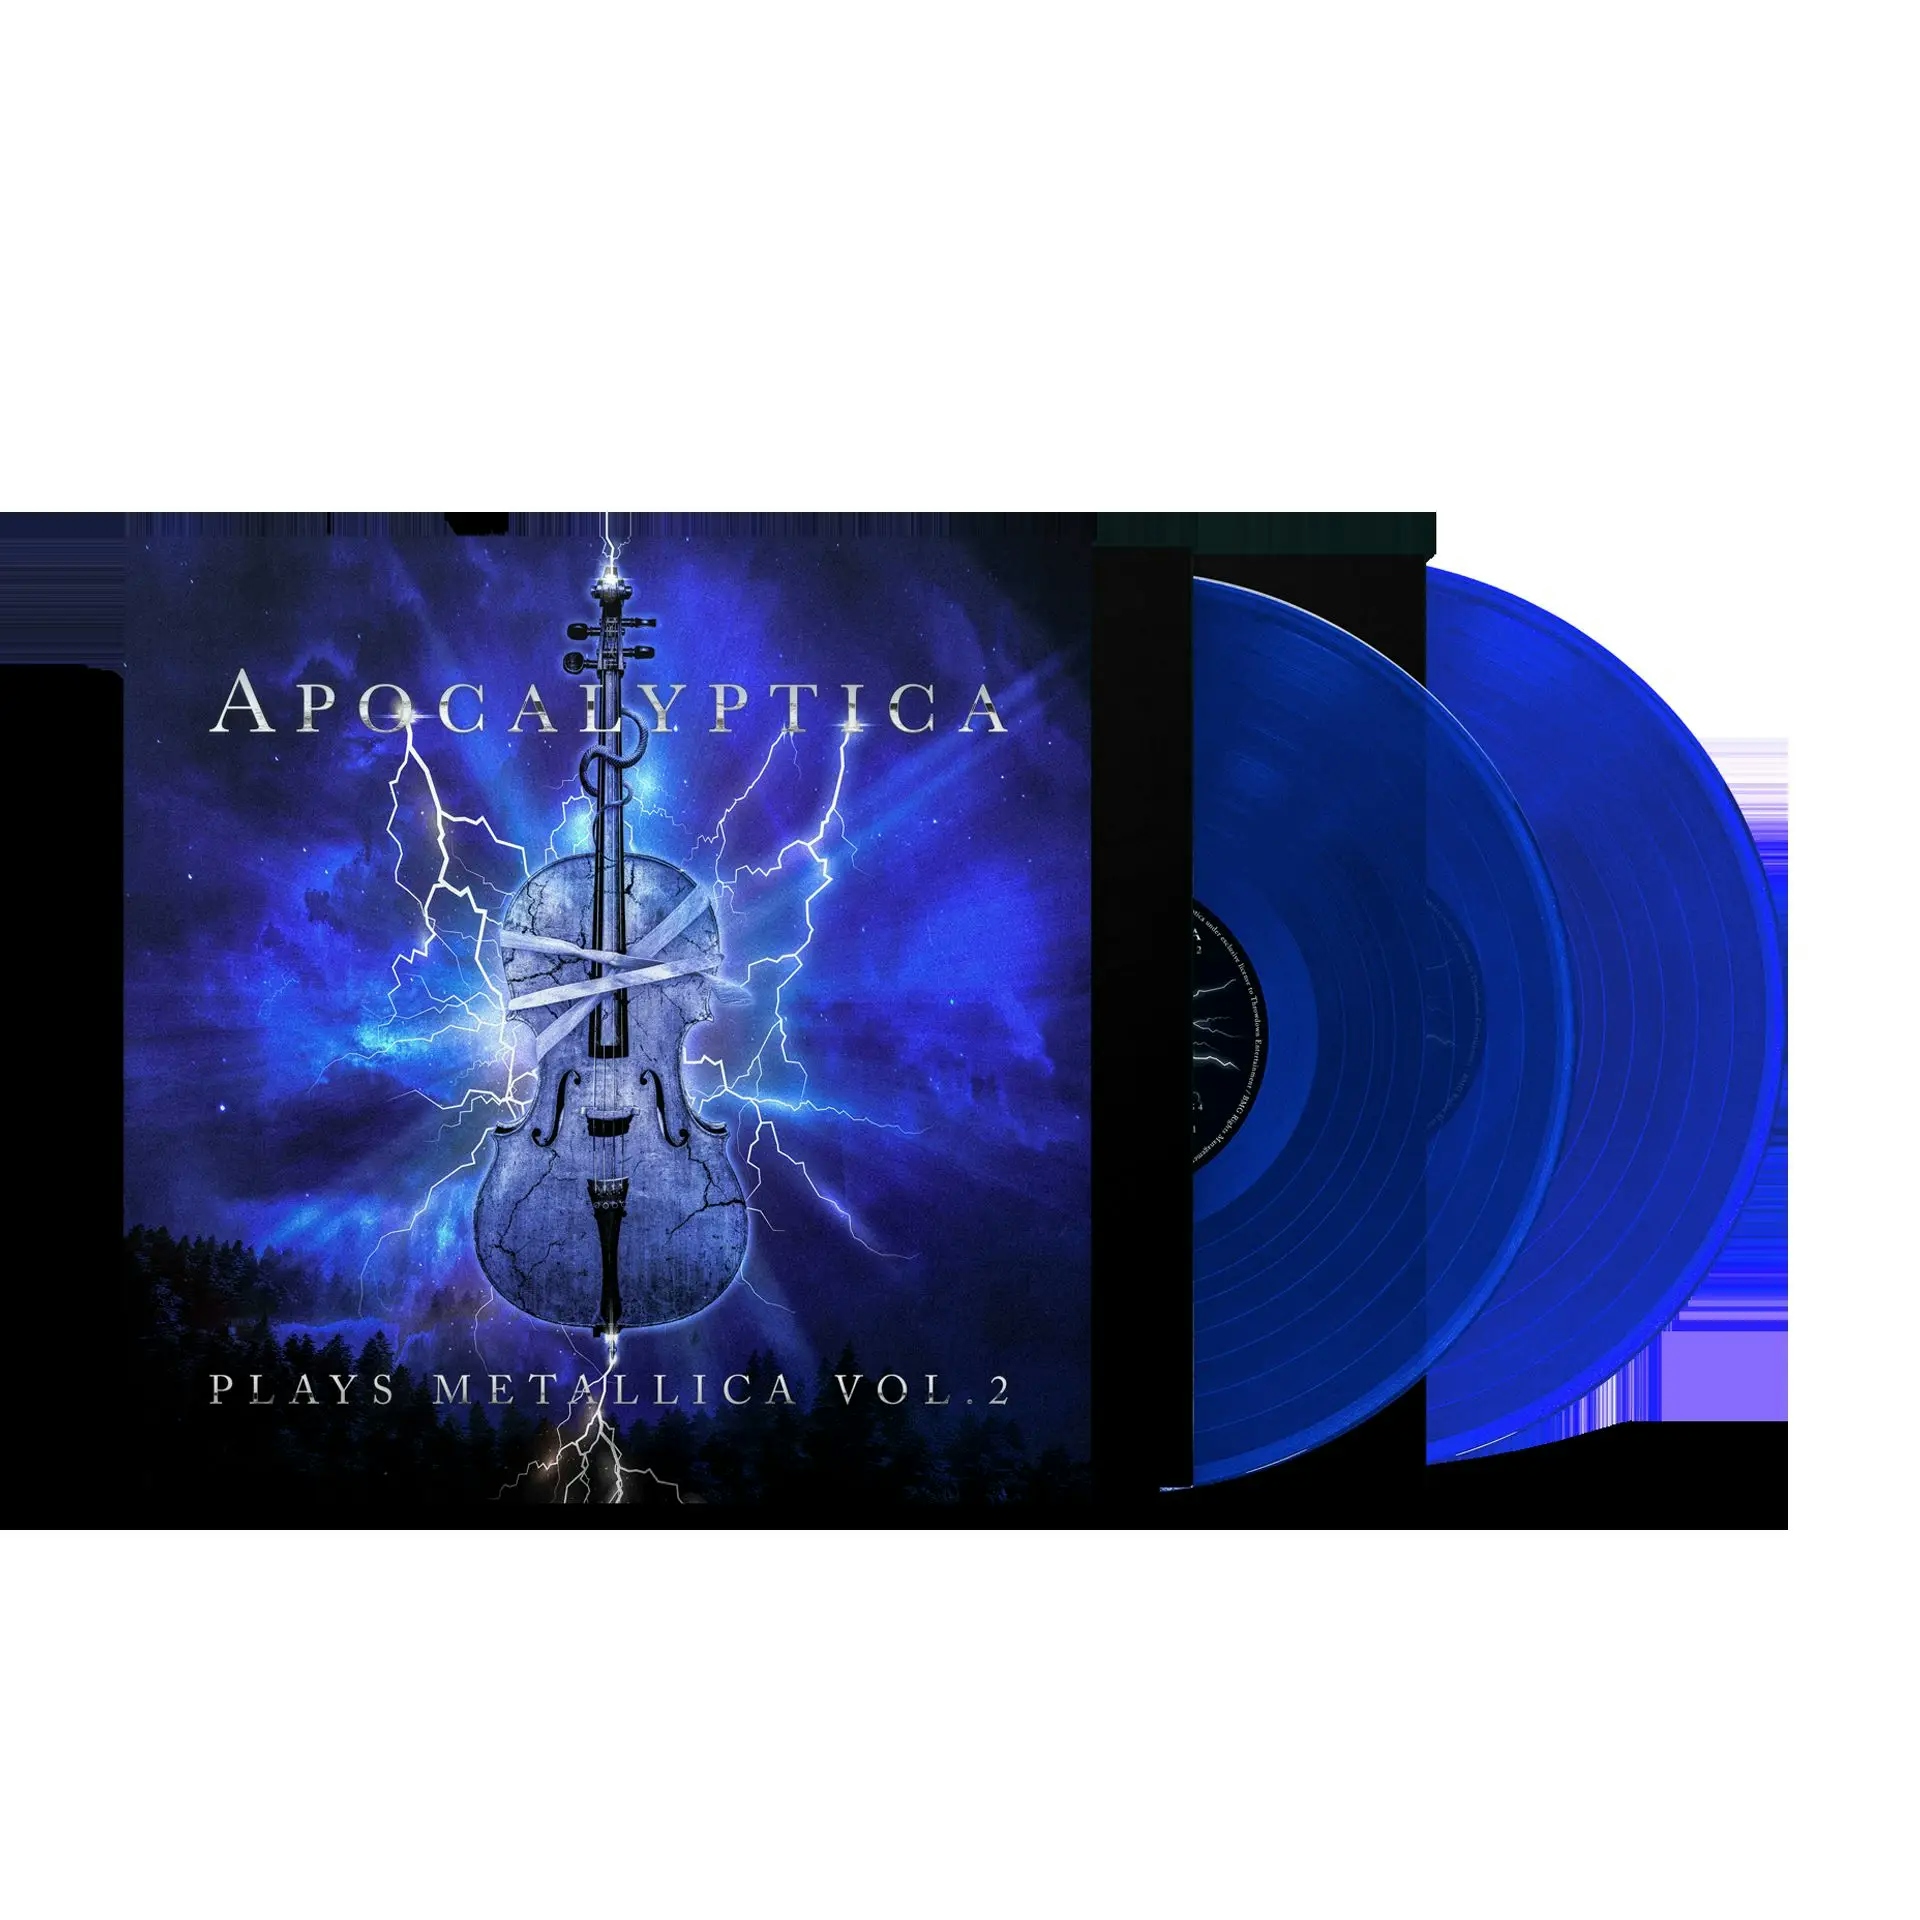 Album artwork for Plays Metallica, Vol 2 by Apocalyptica